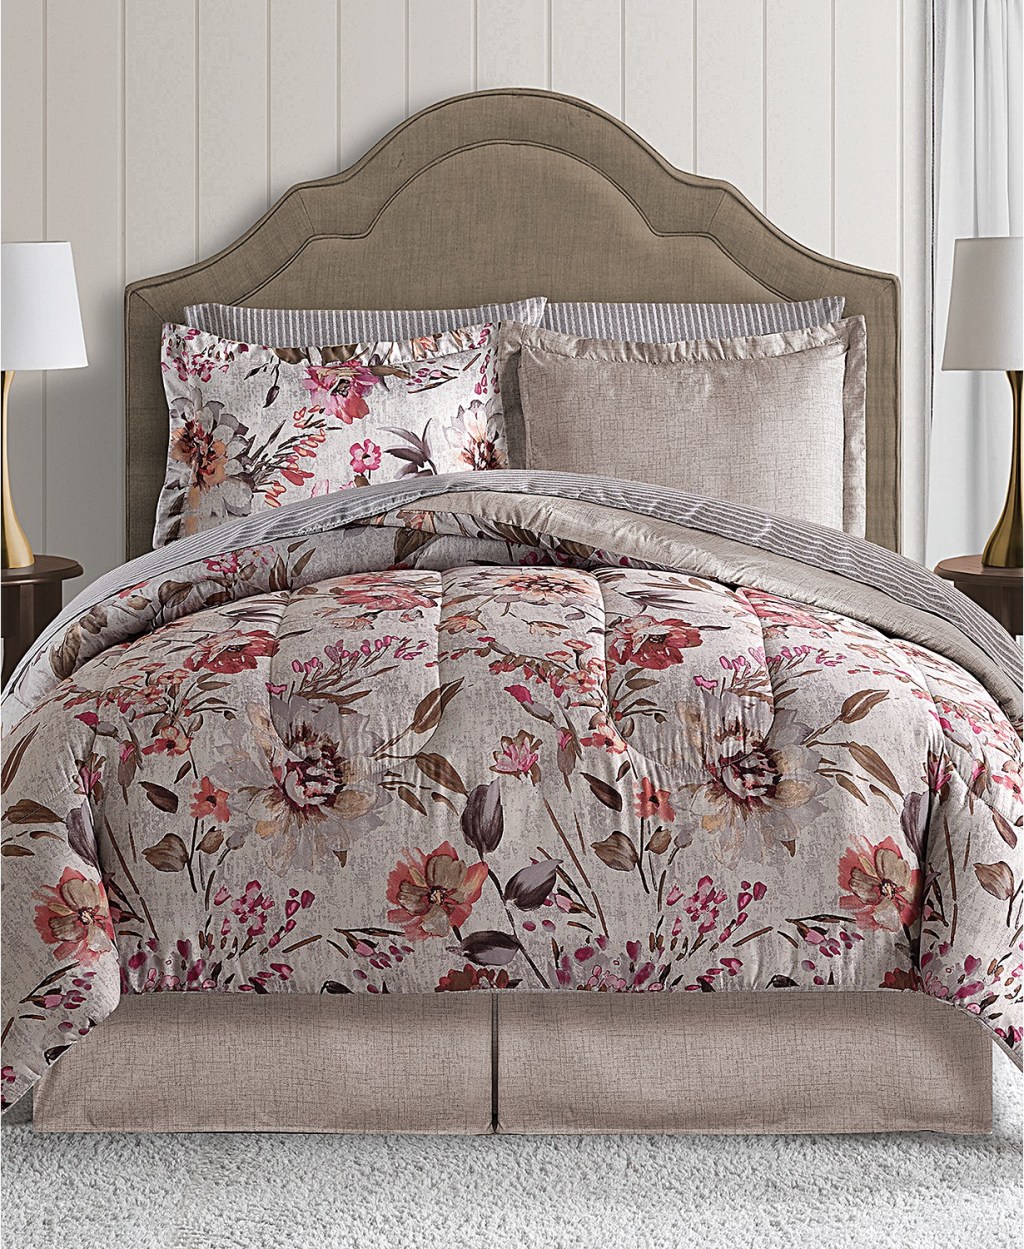 Macy's.com: Reversible 8-Piece Comforter Set Just $27.99 ...